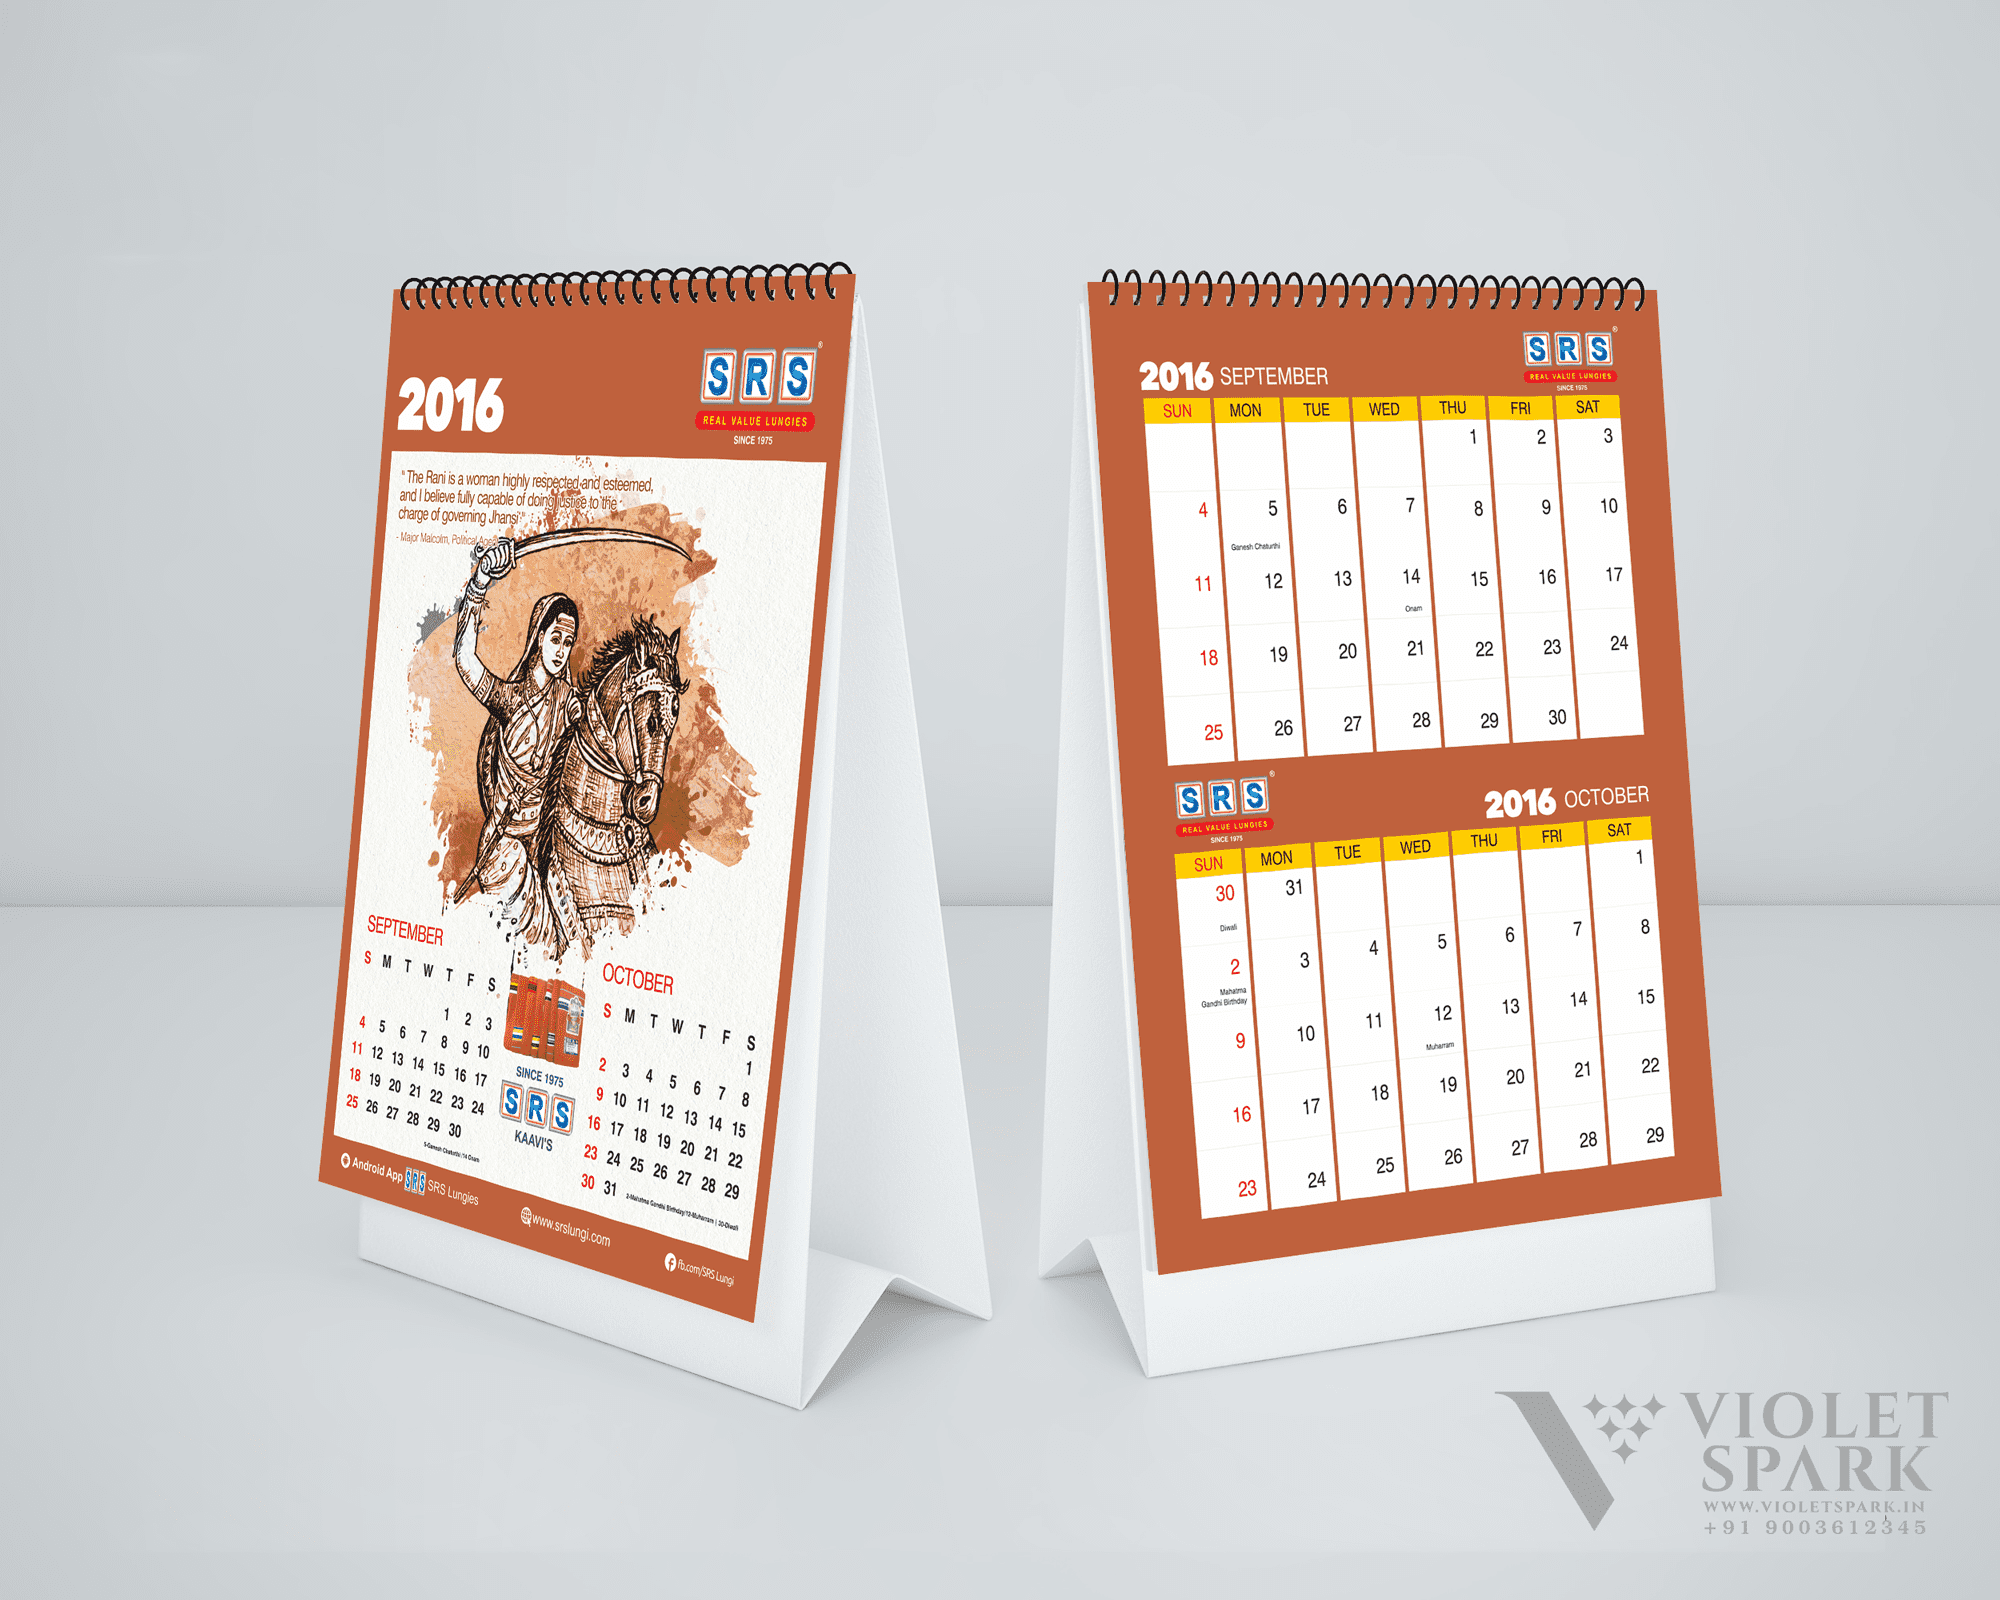 SRS Cotton Mills Calendar Design Branding Packaging Design Digital Marketing in Bangalore by Violet Spark